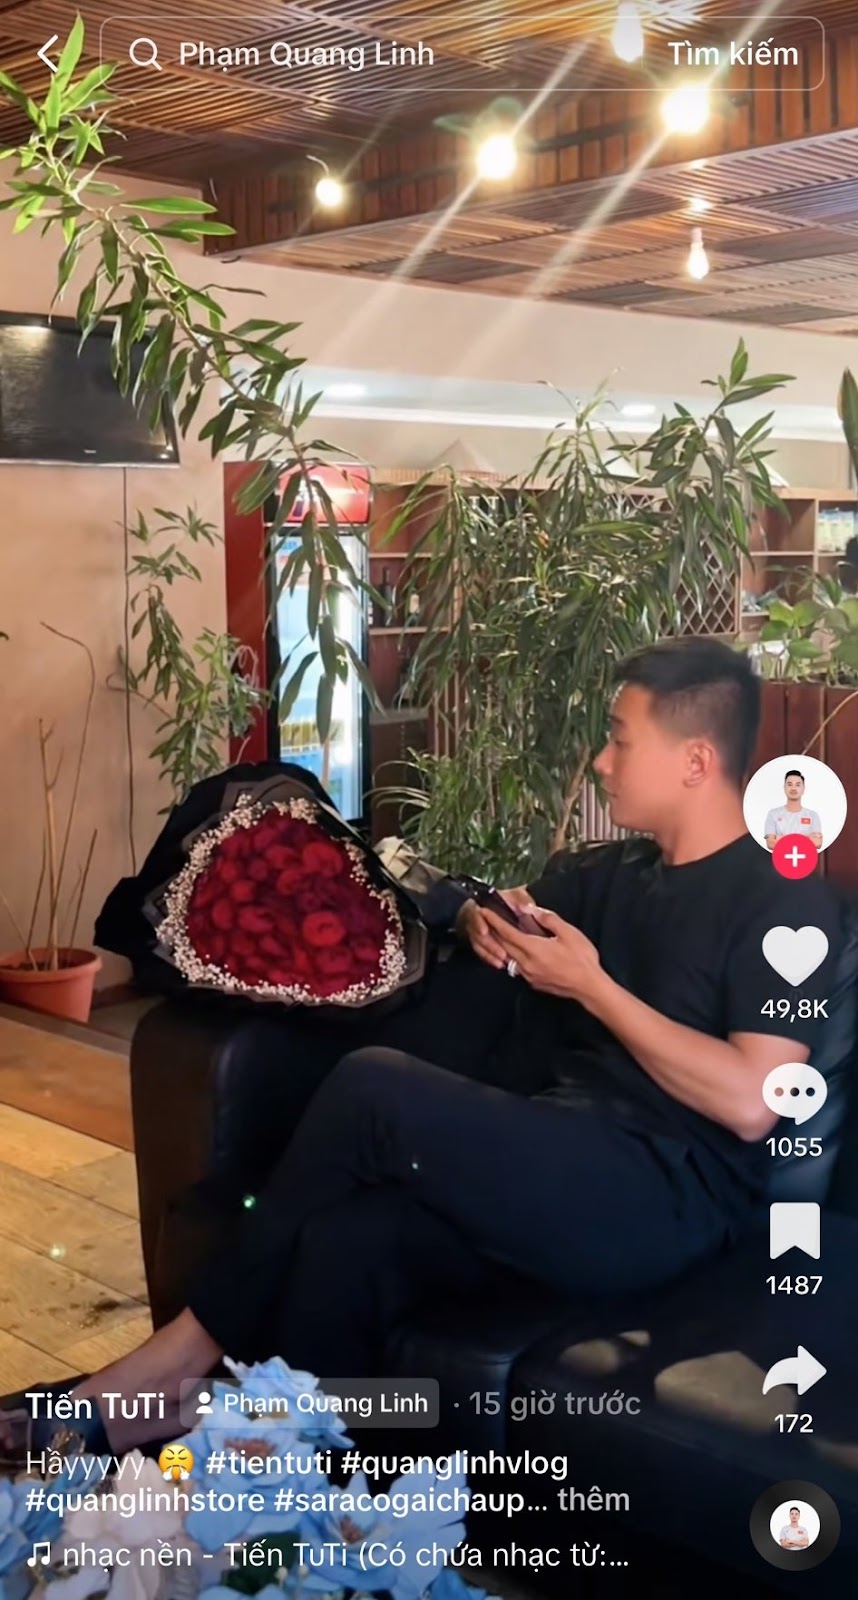 Quang Linh Vlog thẫn thờ khi Thùy Tiên lộ ảnh thân mật tú ông, team châu Phi bị nghi đá xéo nàng hậu - Hình 6